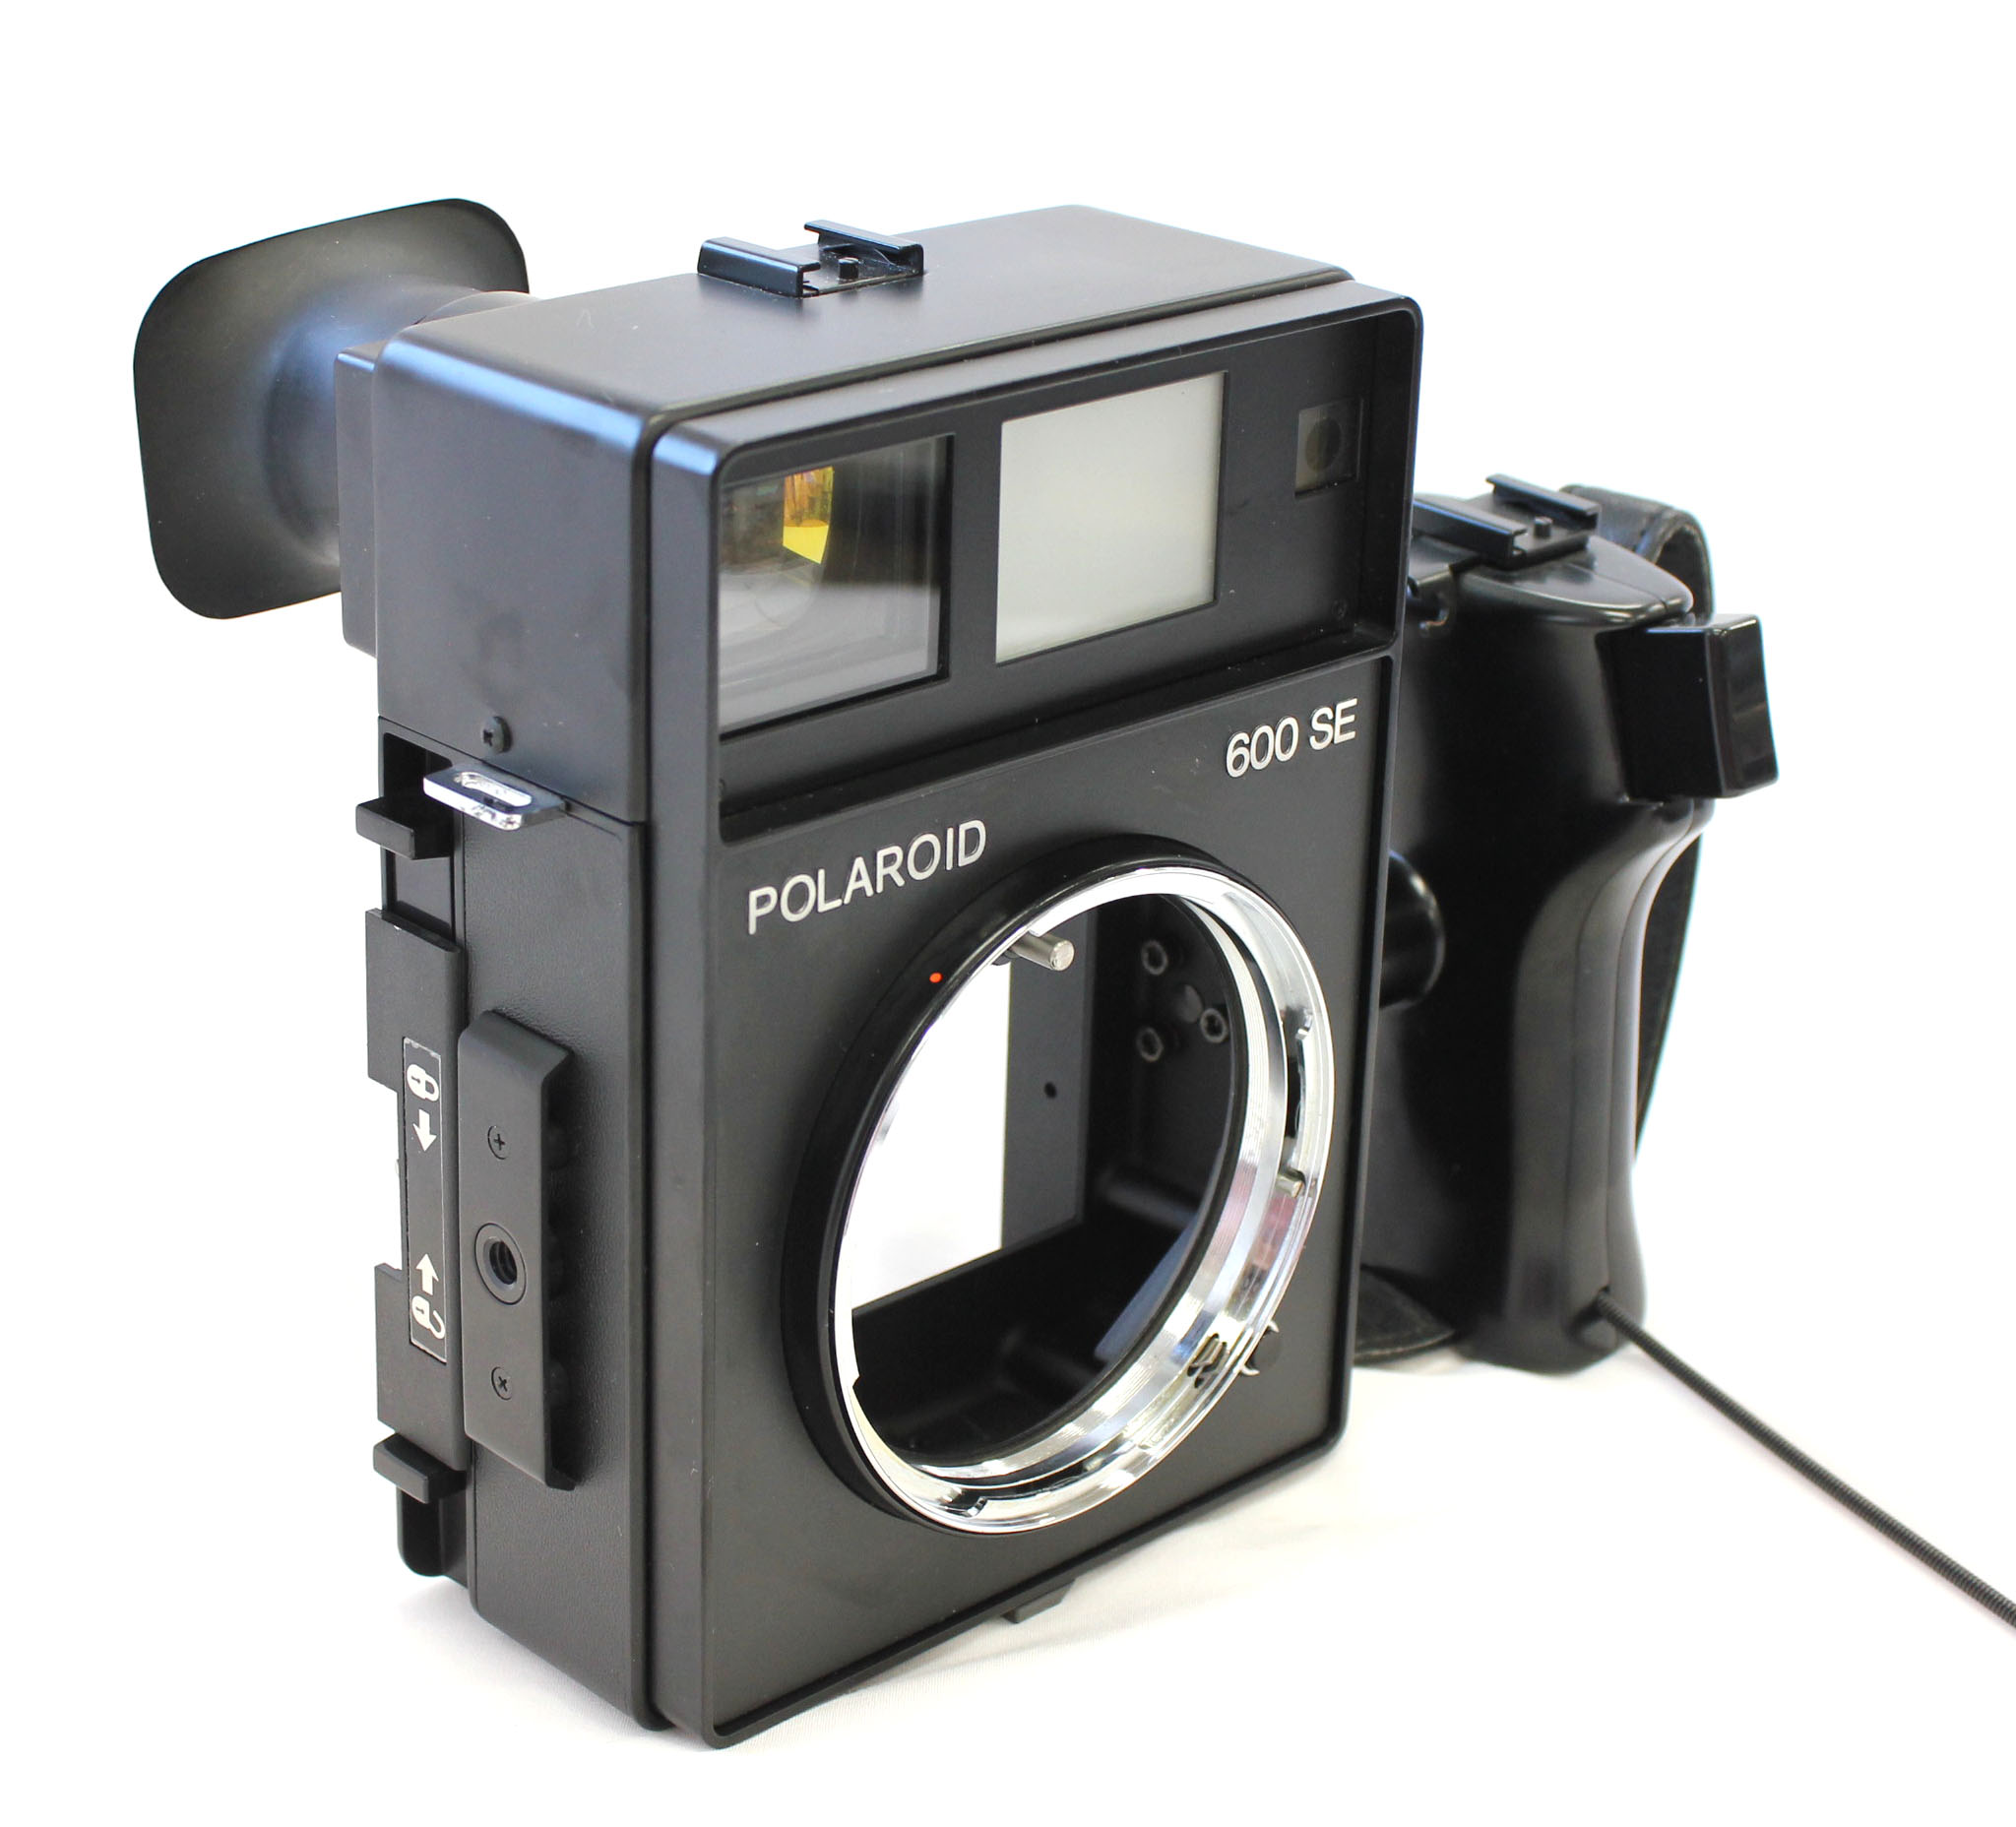  Polaroid 600SE Instant Camera w/ Mamiya 127mm F/4.7 Lens and Polaroid Back from Japan Photo 5